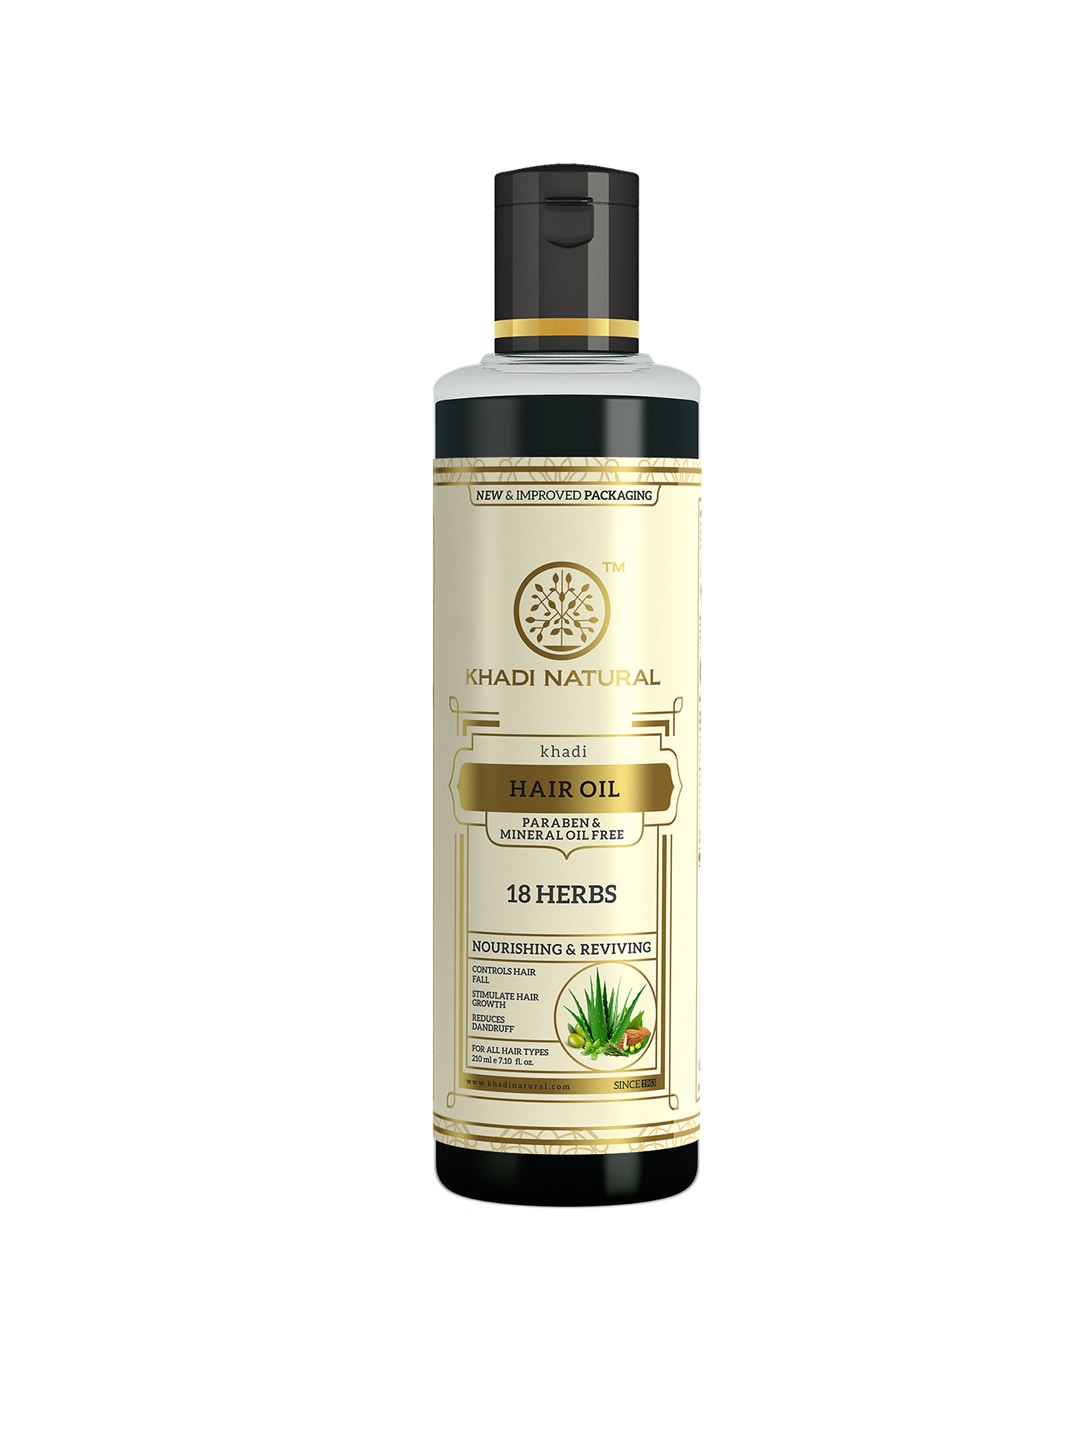 Khadi Natural Unisex 18 Herbs Herbal Hair Oil 210 ml Price in India